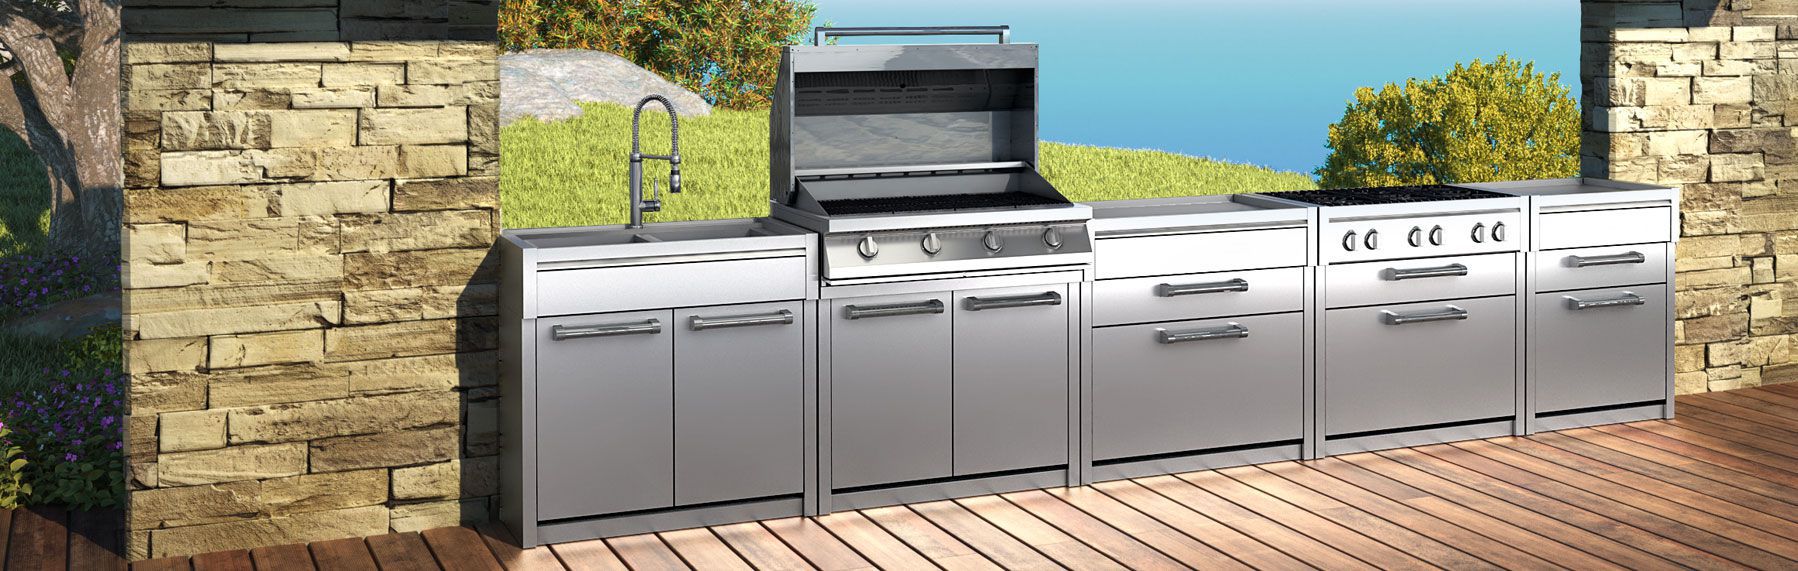 steel-bbq-exclusieve-outdoor-kitchen-buitenkeuken-951695.jpeg